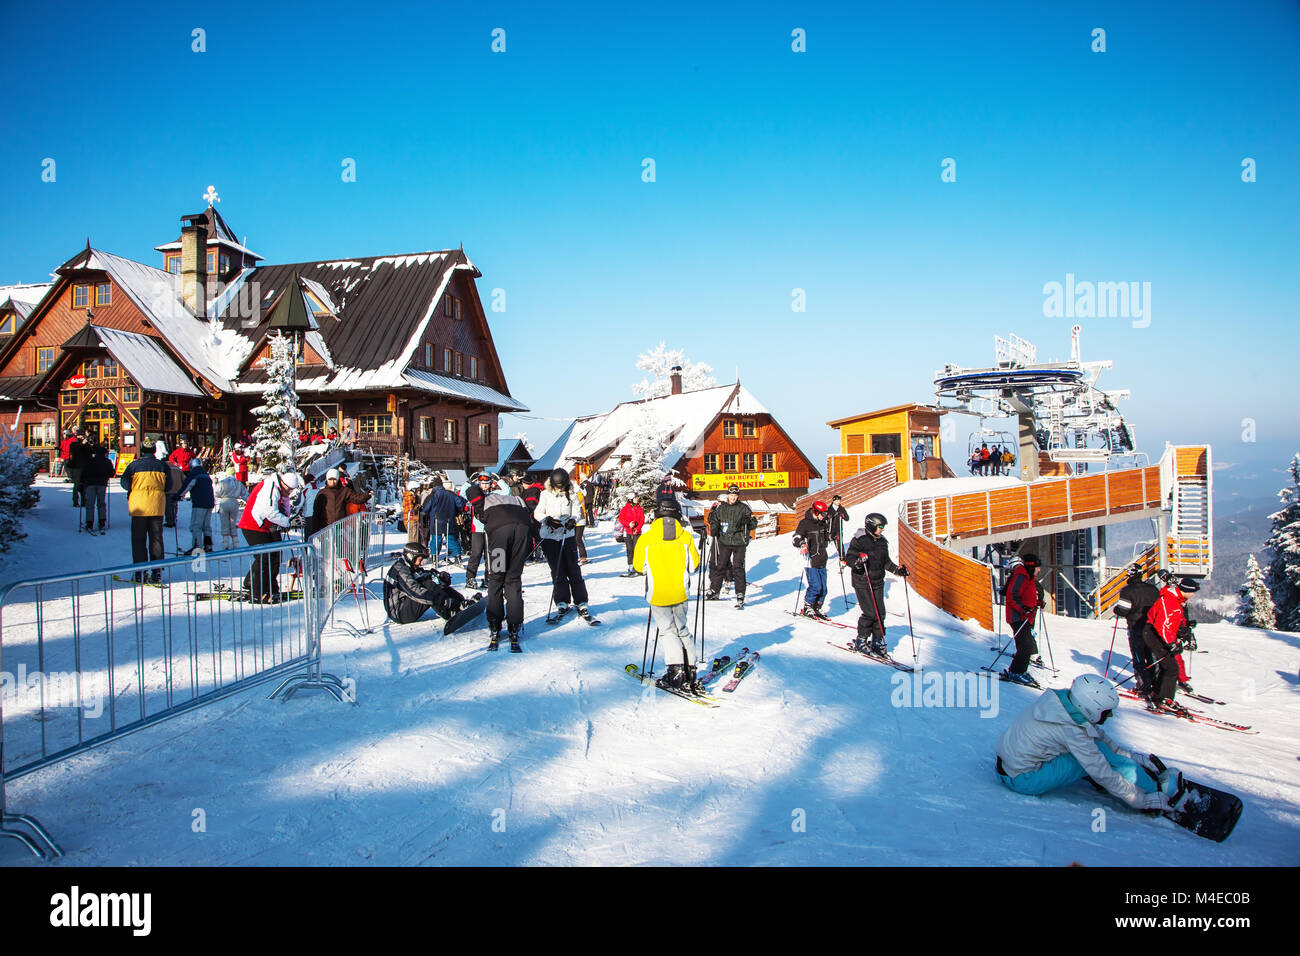 Les skieurs en vestes lumineuses se préparent à descendre en skis Banque D'Images